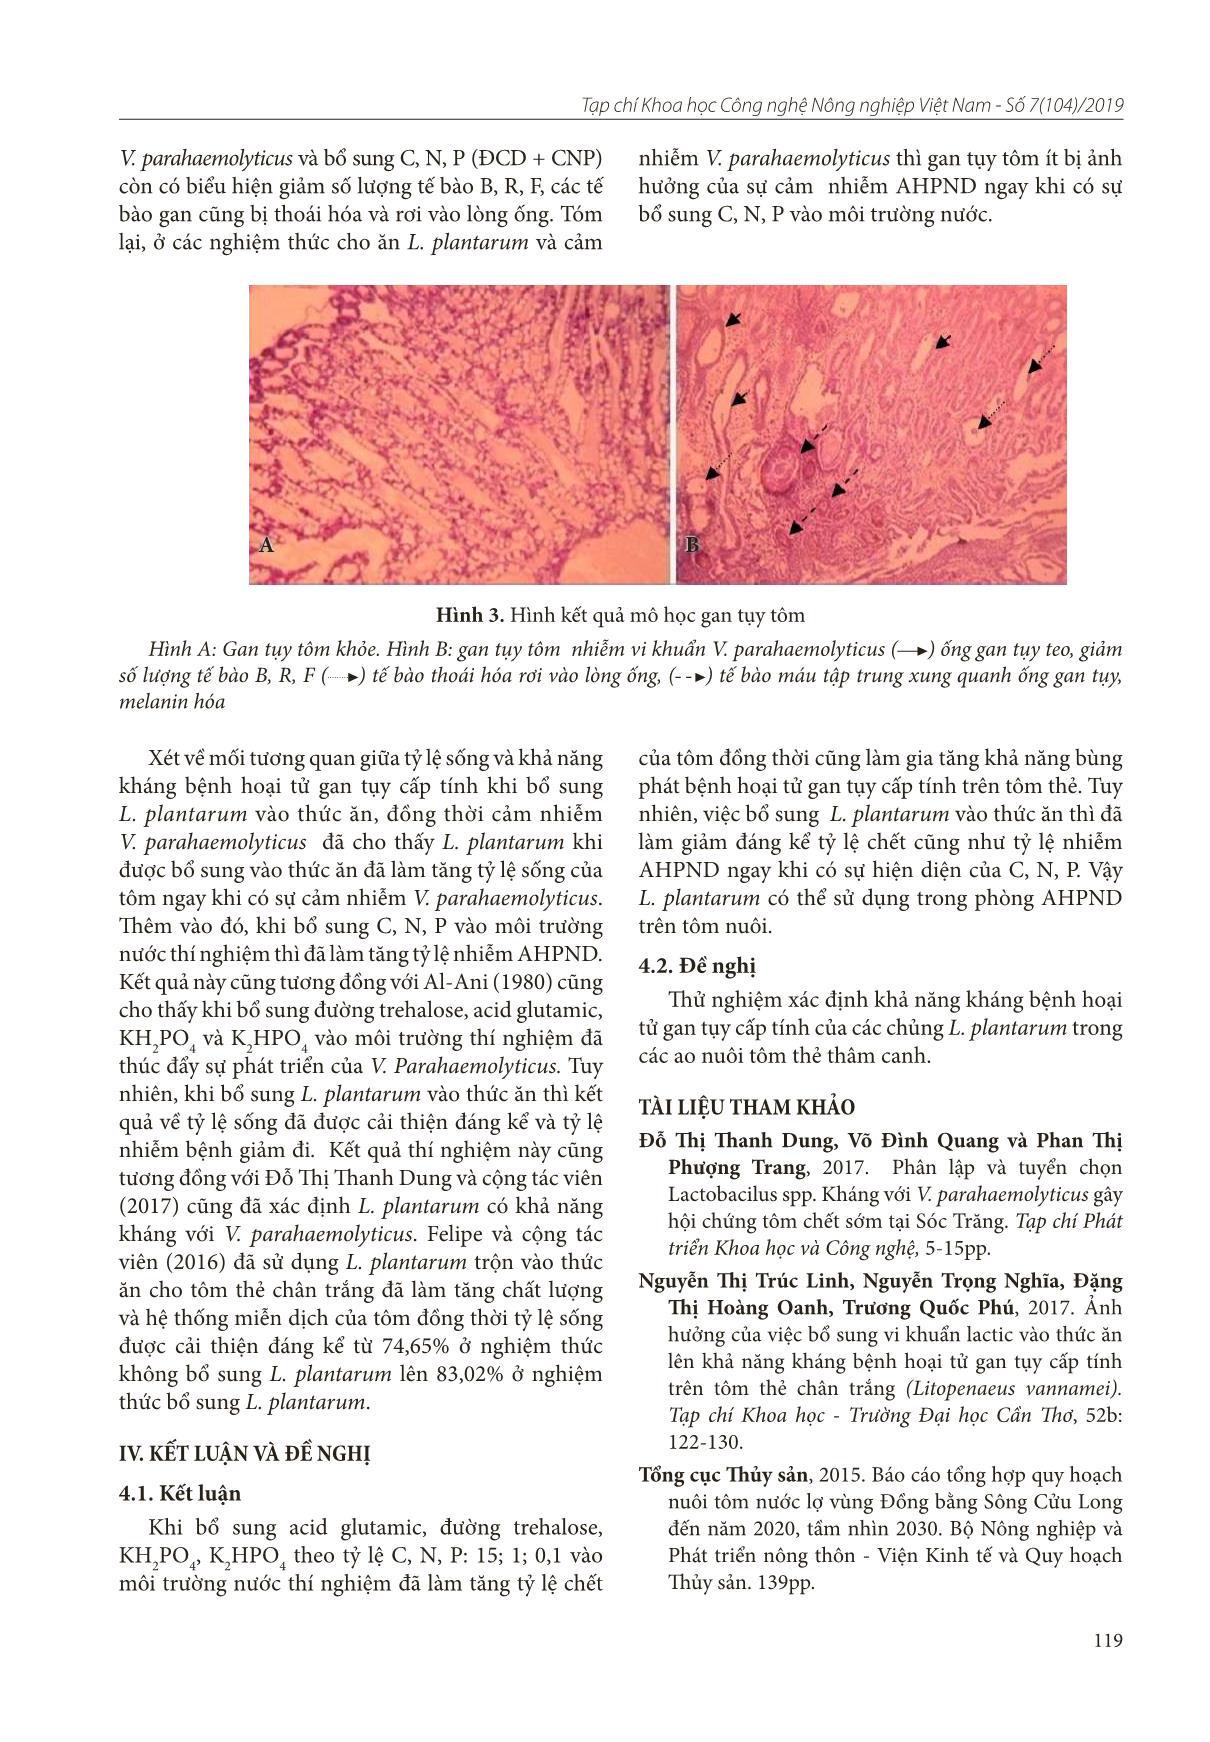 Ảnh hưởng của việc bổ sung vi khuẩn Lactobacillus plantarum và C, N, P lên tỷ lệ sống và phòng bệnh hoại tử gan tụy cấp tính trên tôm thẻ chân trắng trang 6